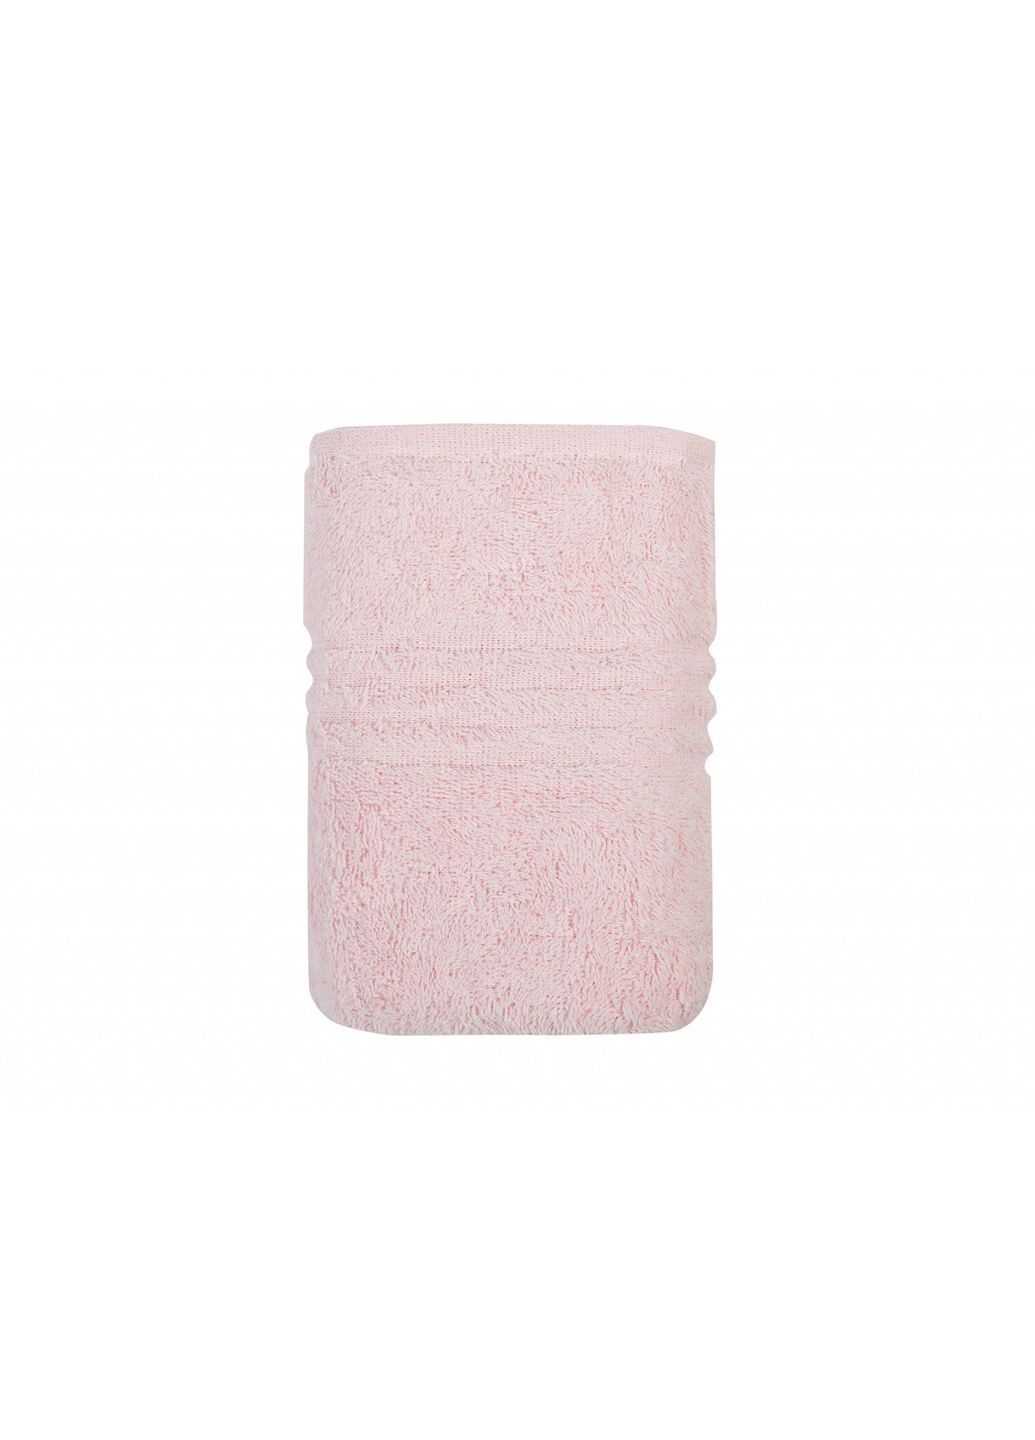 Irya полотенце - linear orme a.pembe розовый 30*50 розовый производство -